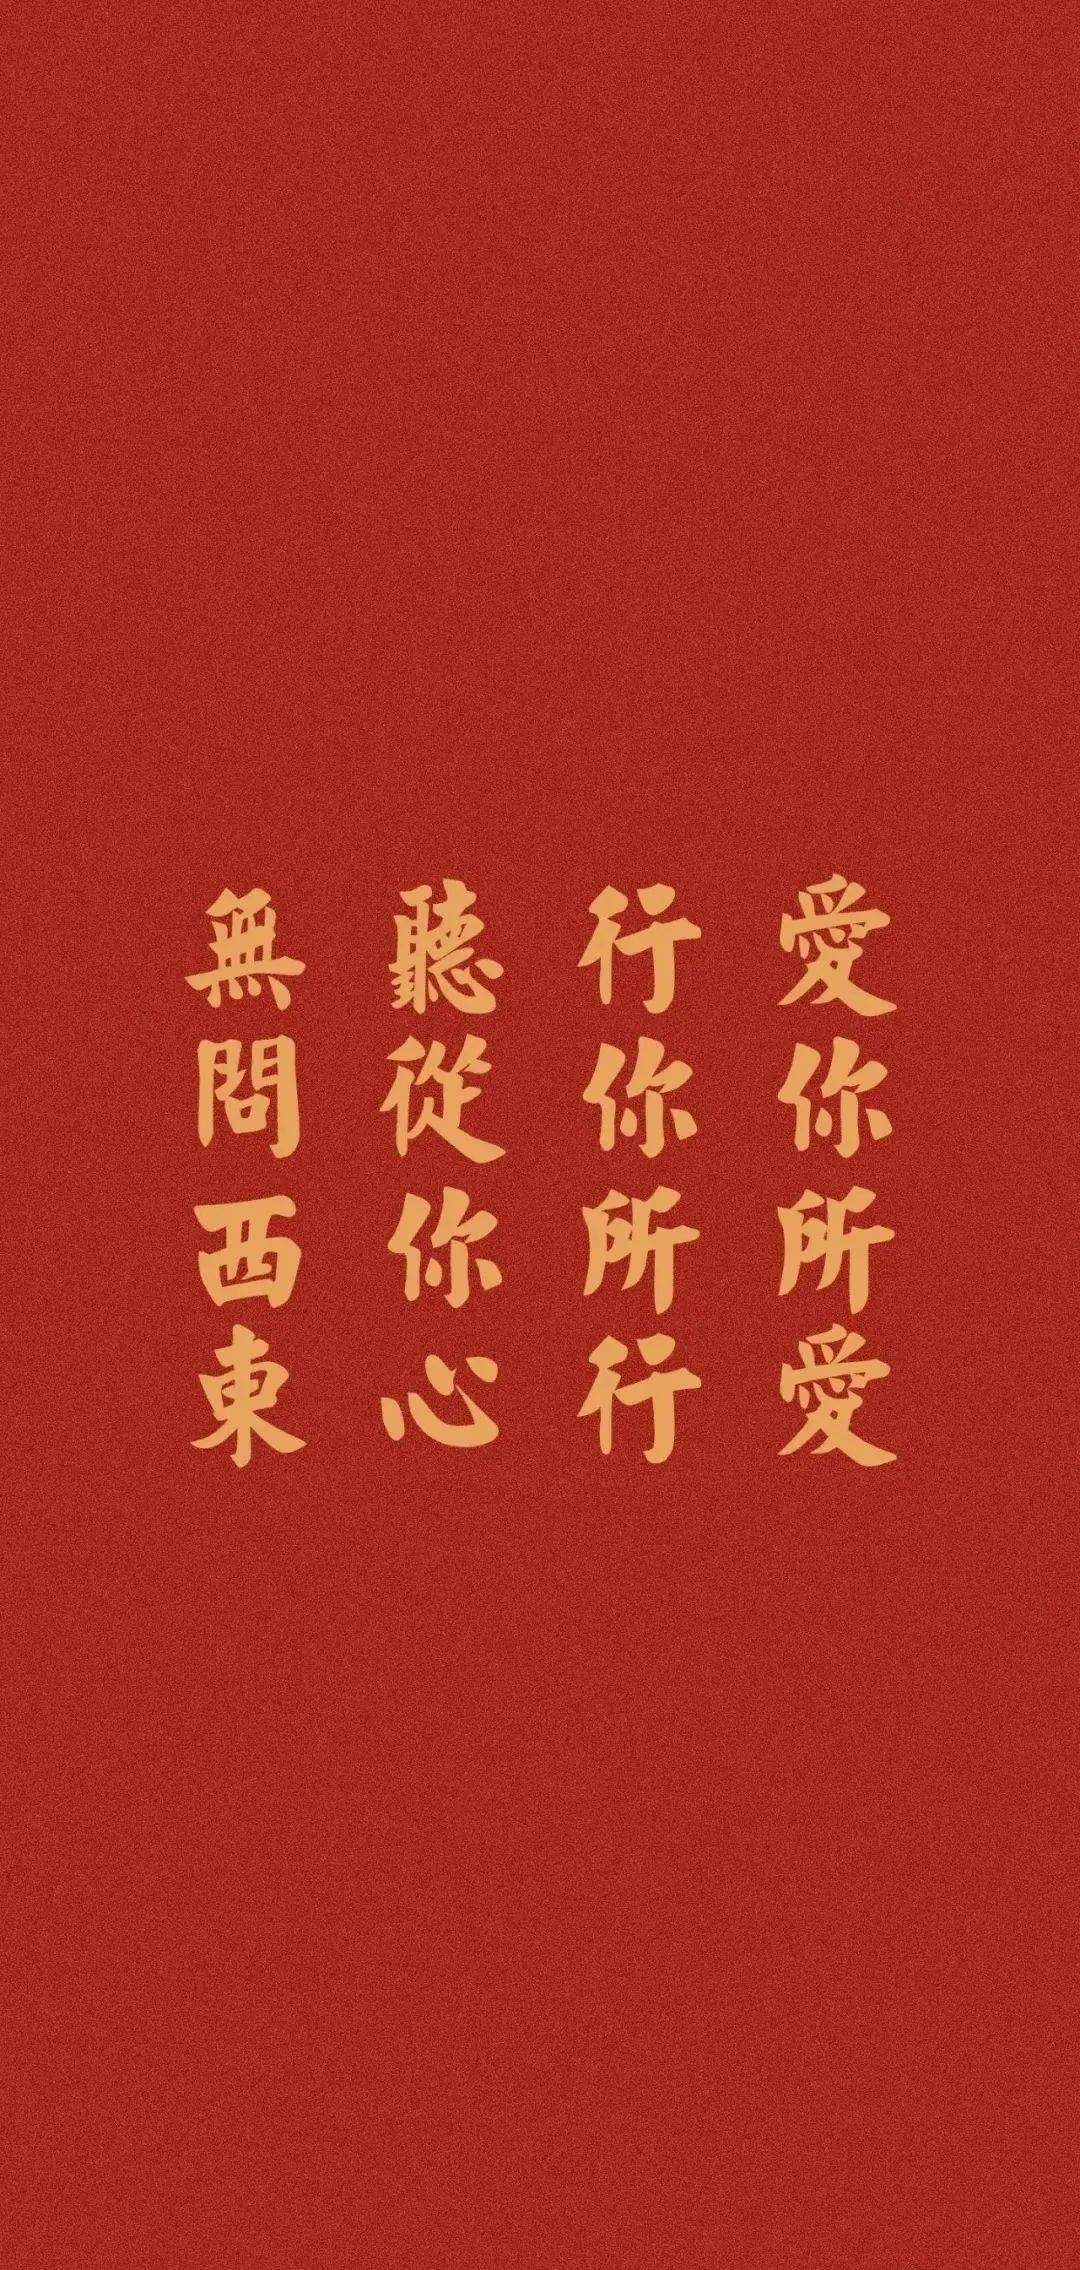 2021春节红色喜庆文字壁纸大全